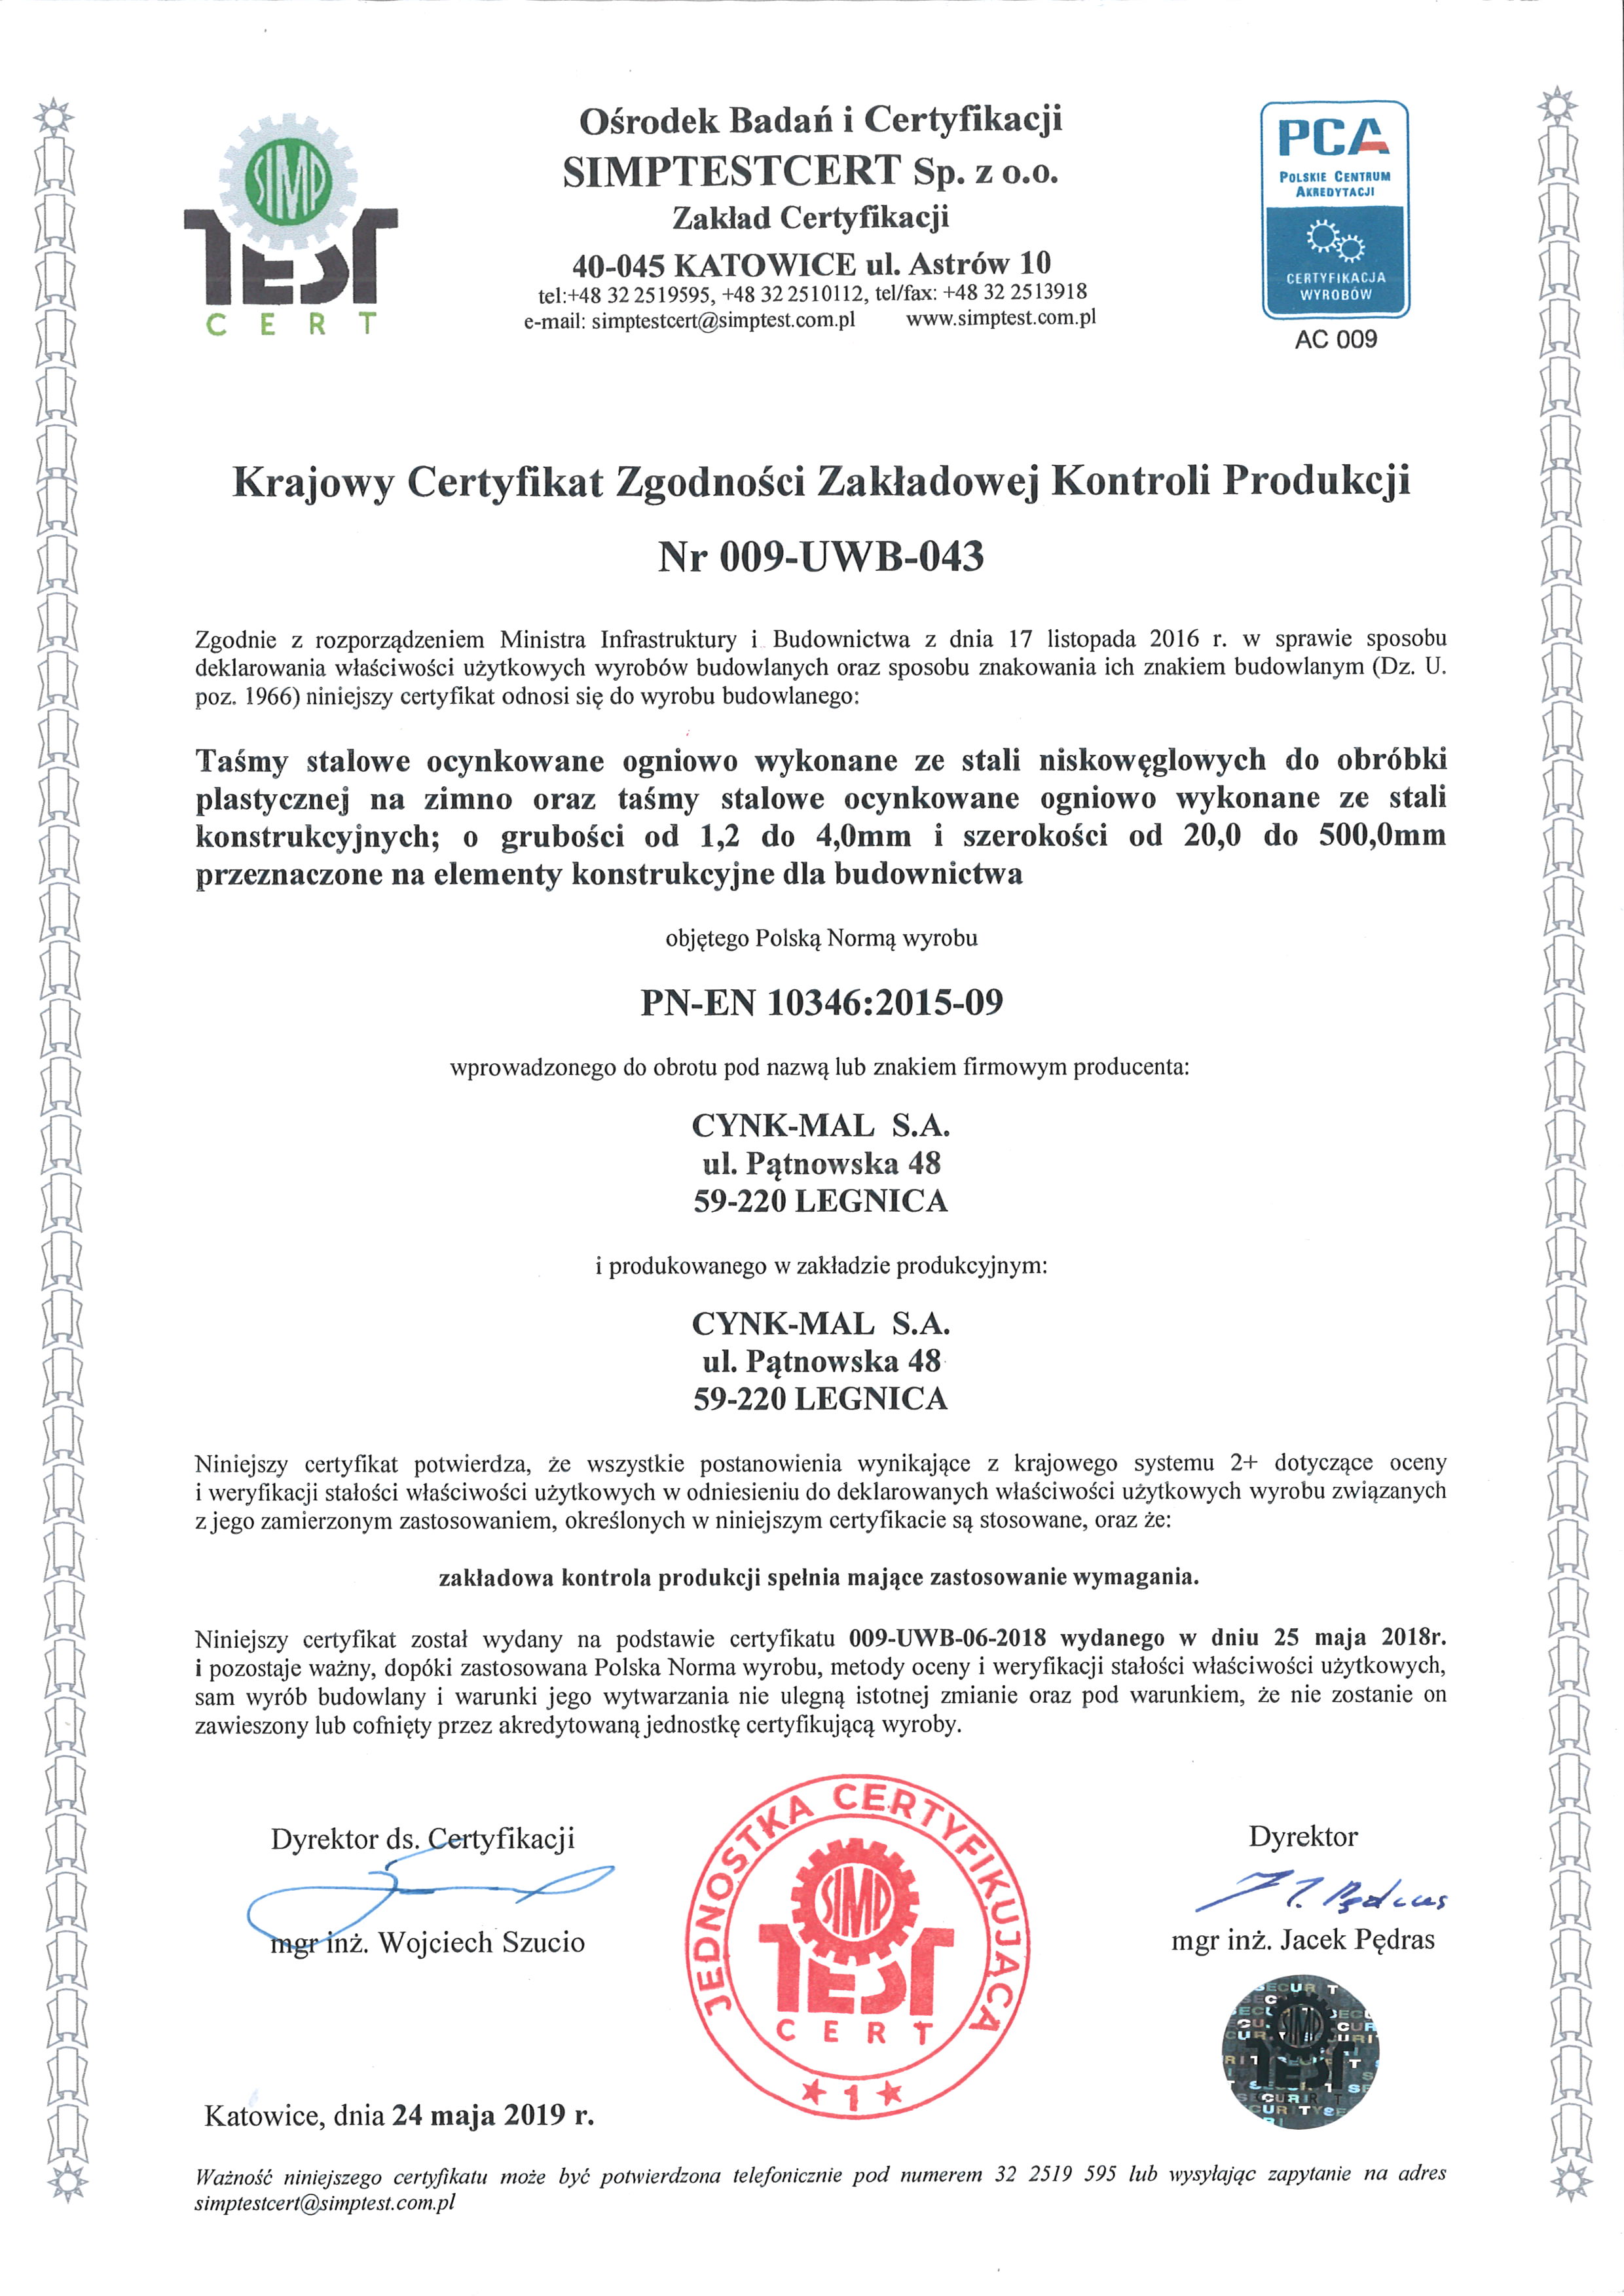 Сертификат заводского контроля производства